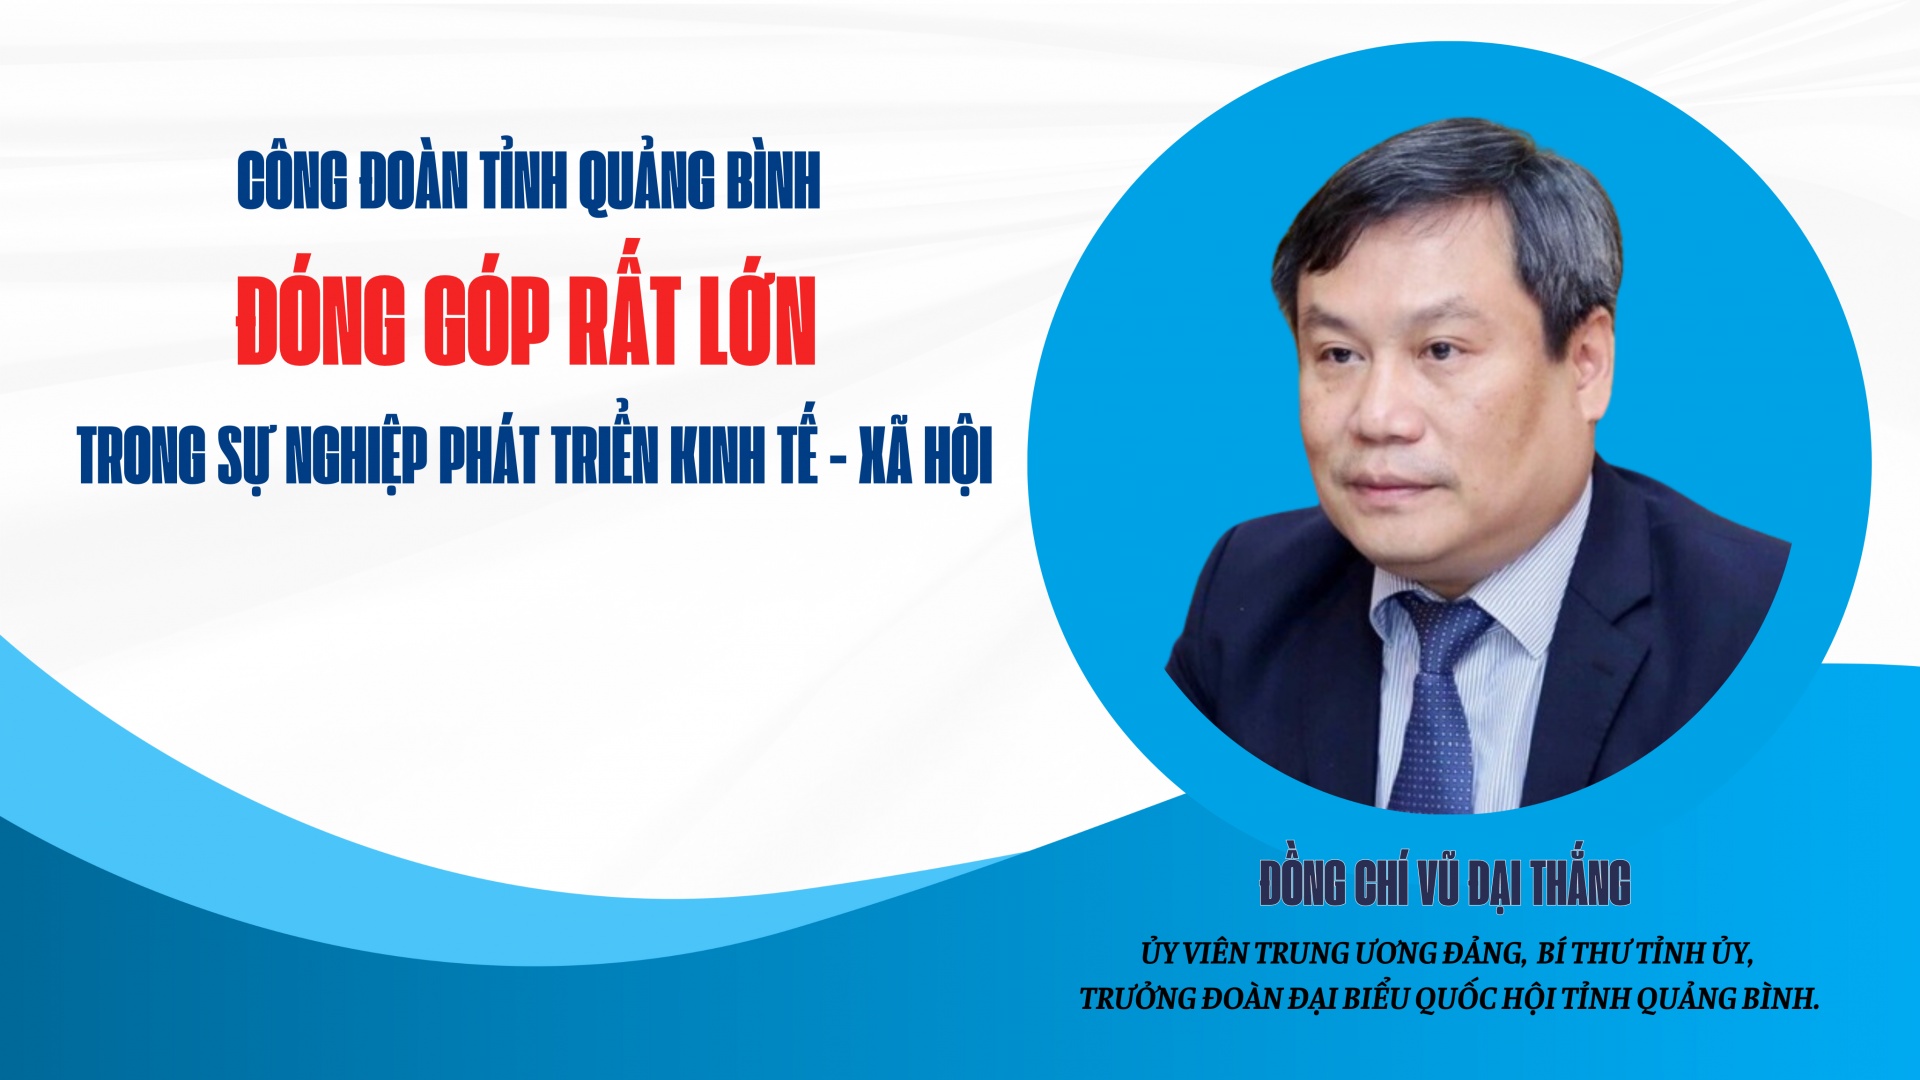 Công đoàn tỉnh Quảng Bình đóng góp rất lớn trong sự nghiệp phát triển kinh tế - xã hội